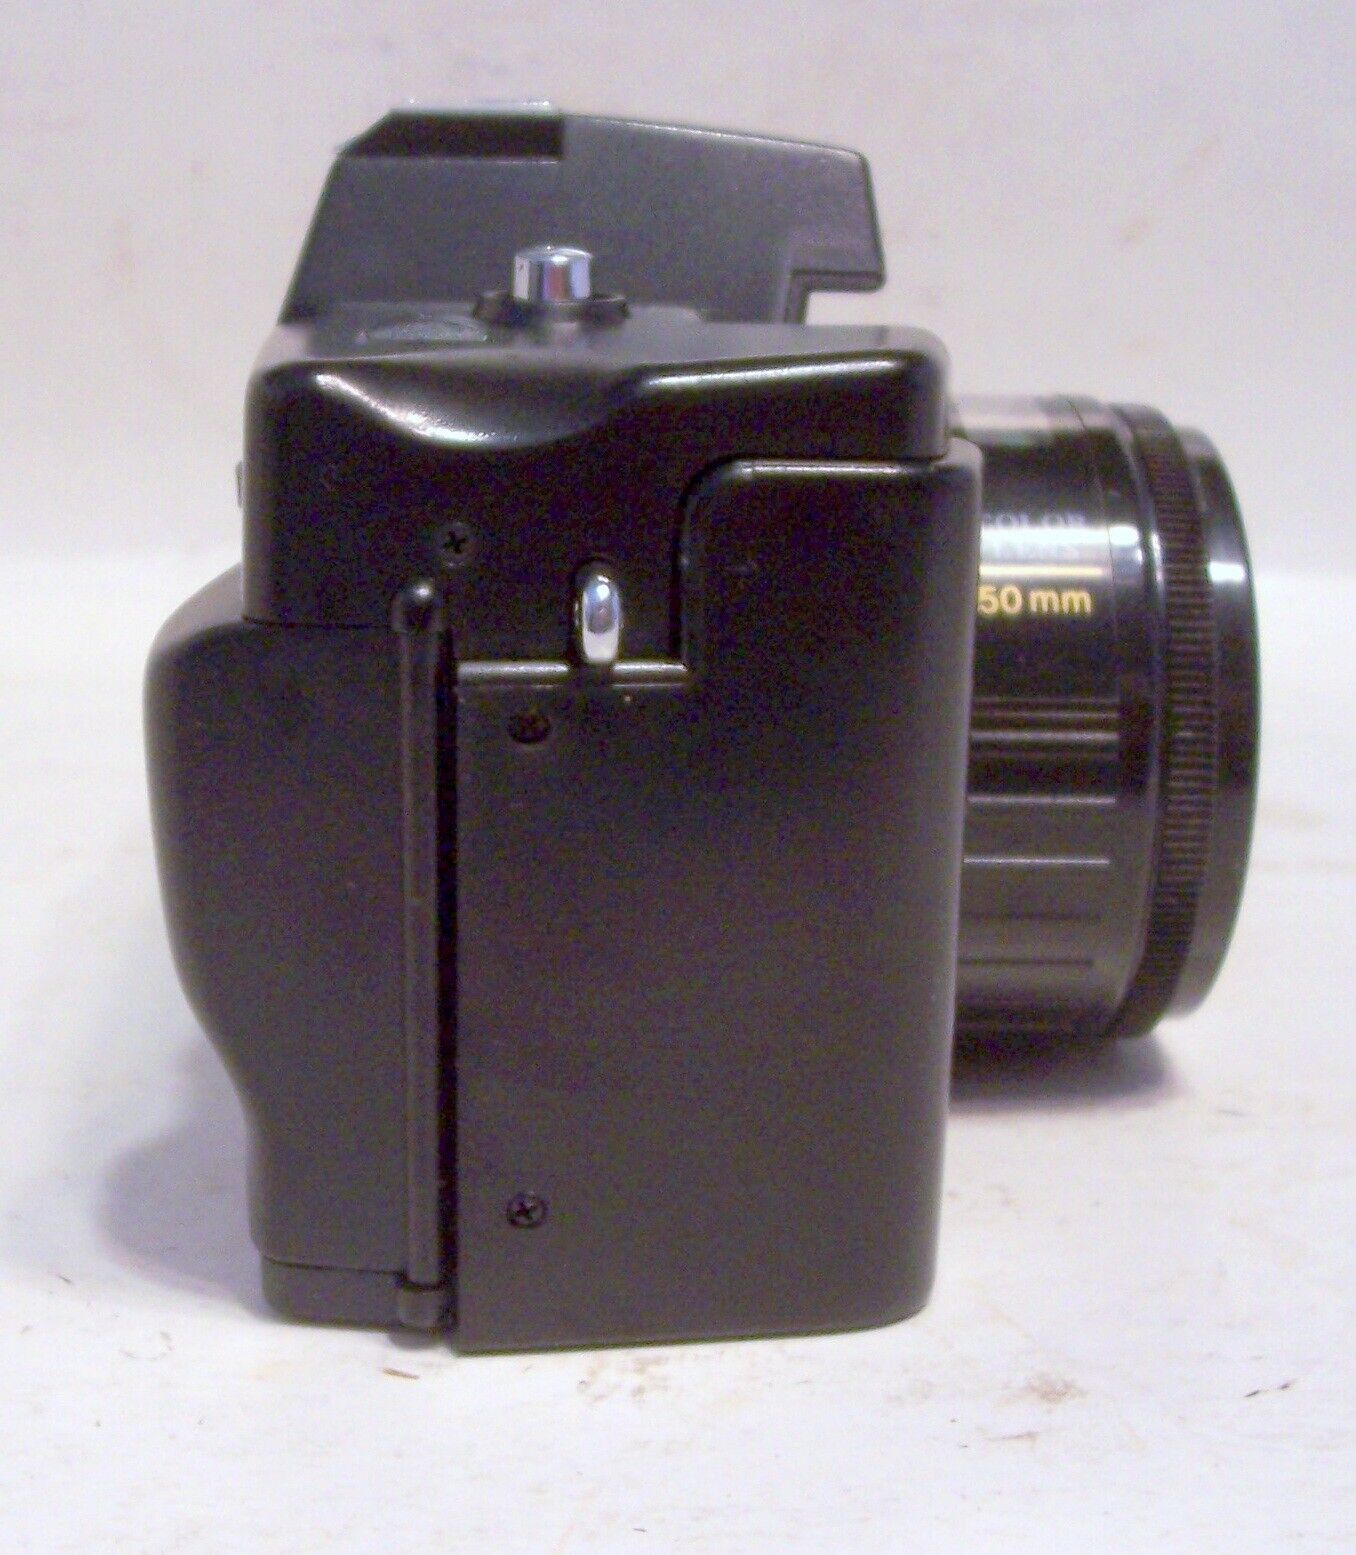 NEW Vintage Film 35mm Camera Nippon AR-4392F w/ Case, Strap, Sun Shade, Lens Cap Nippon ar 4392F - фотография #18